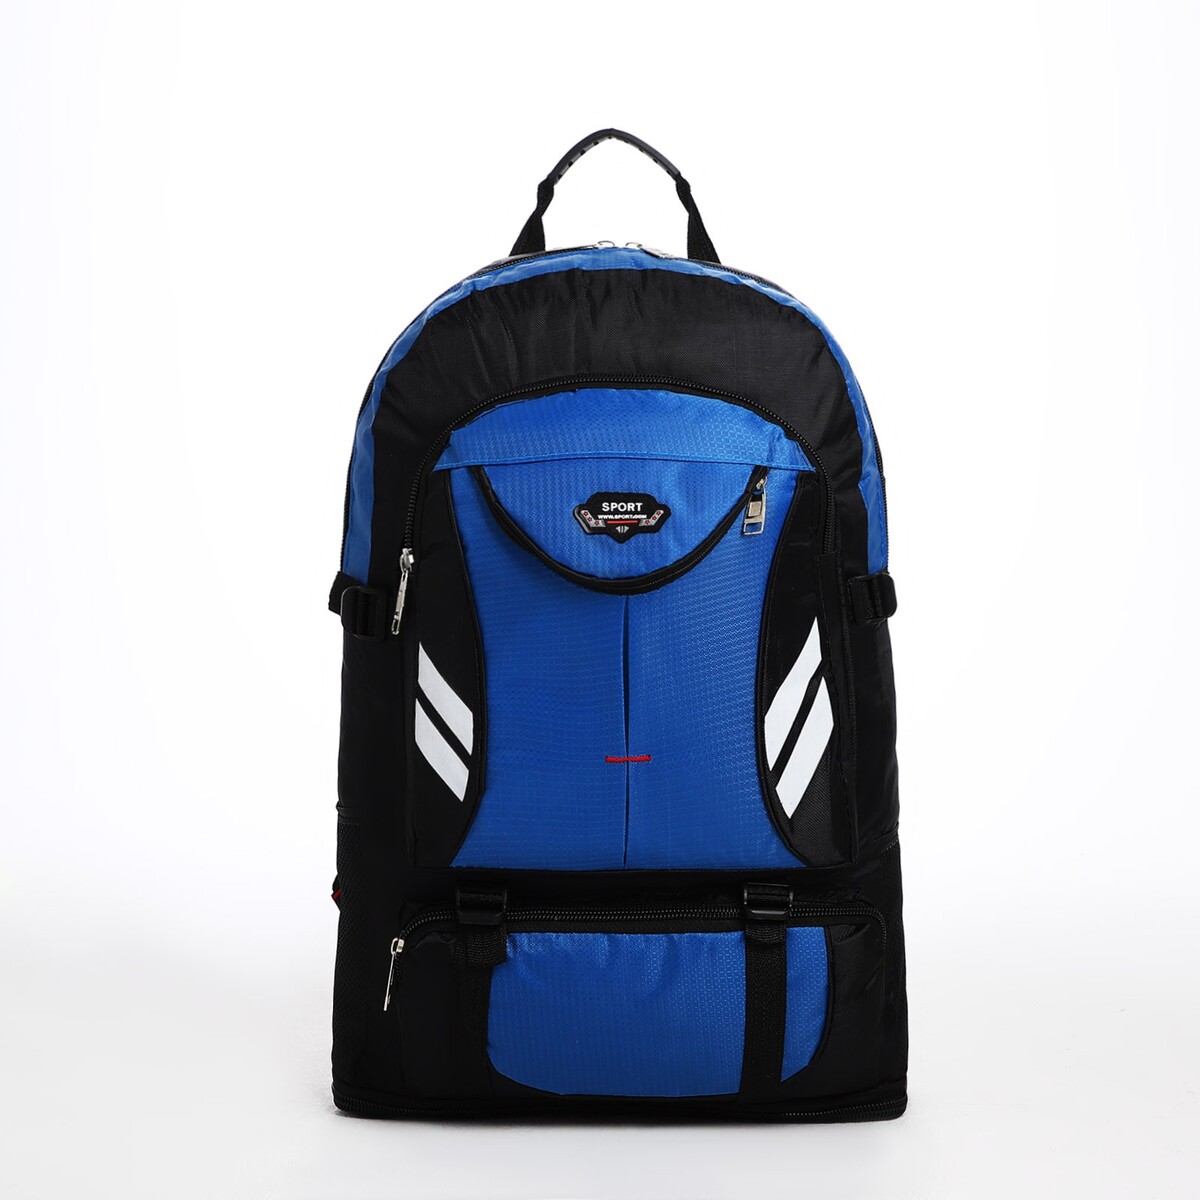 Рюкзак туристический на молнии, 4 наружных кармана, цвет синий/черный рюкзак на молнии 2 наружных кармана синий